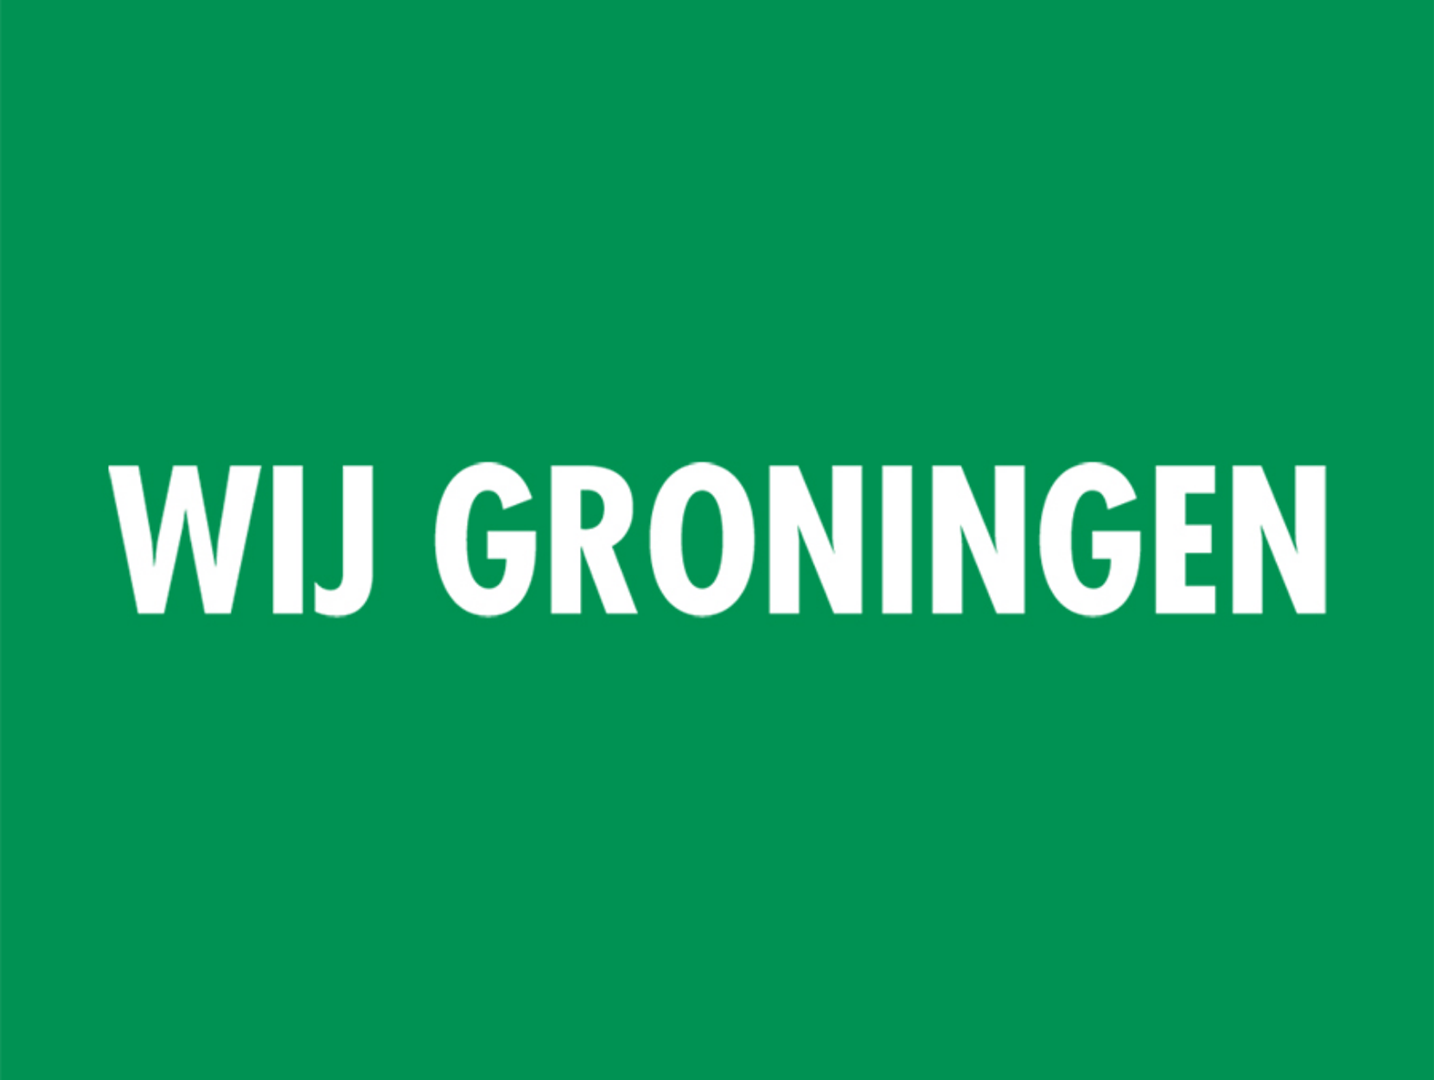 WIJ Groningen